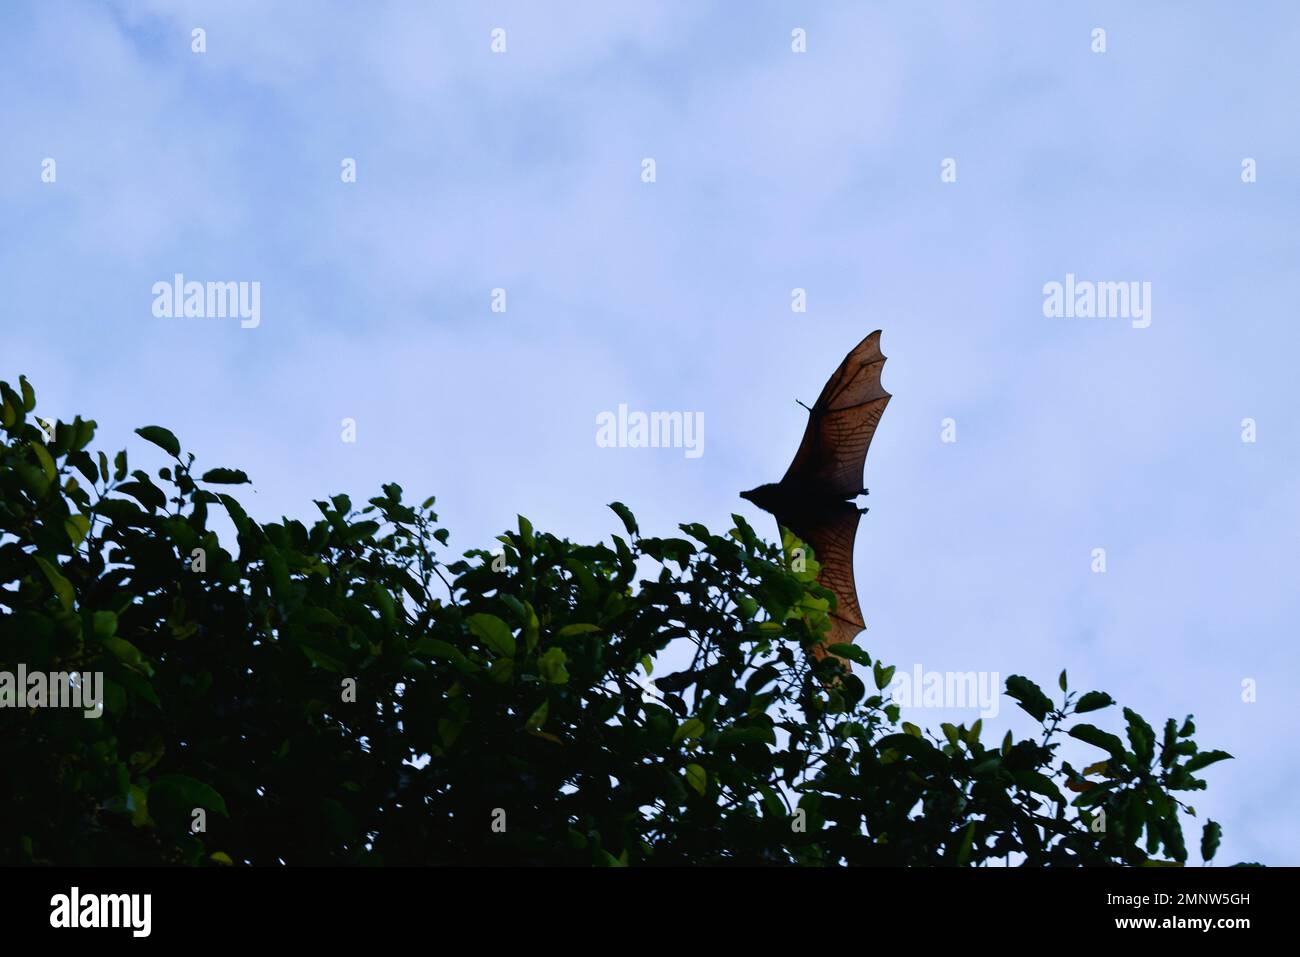 Pipistrelli che volano durante il giorno, cielo blu. Caratteristiche della città di Soppeng, Sulawesi meridionale, Indonesia. Pipistrelli vivono negli alberi. Foto Stock